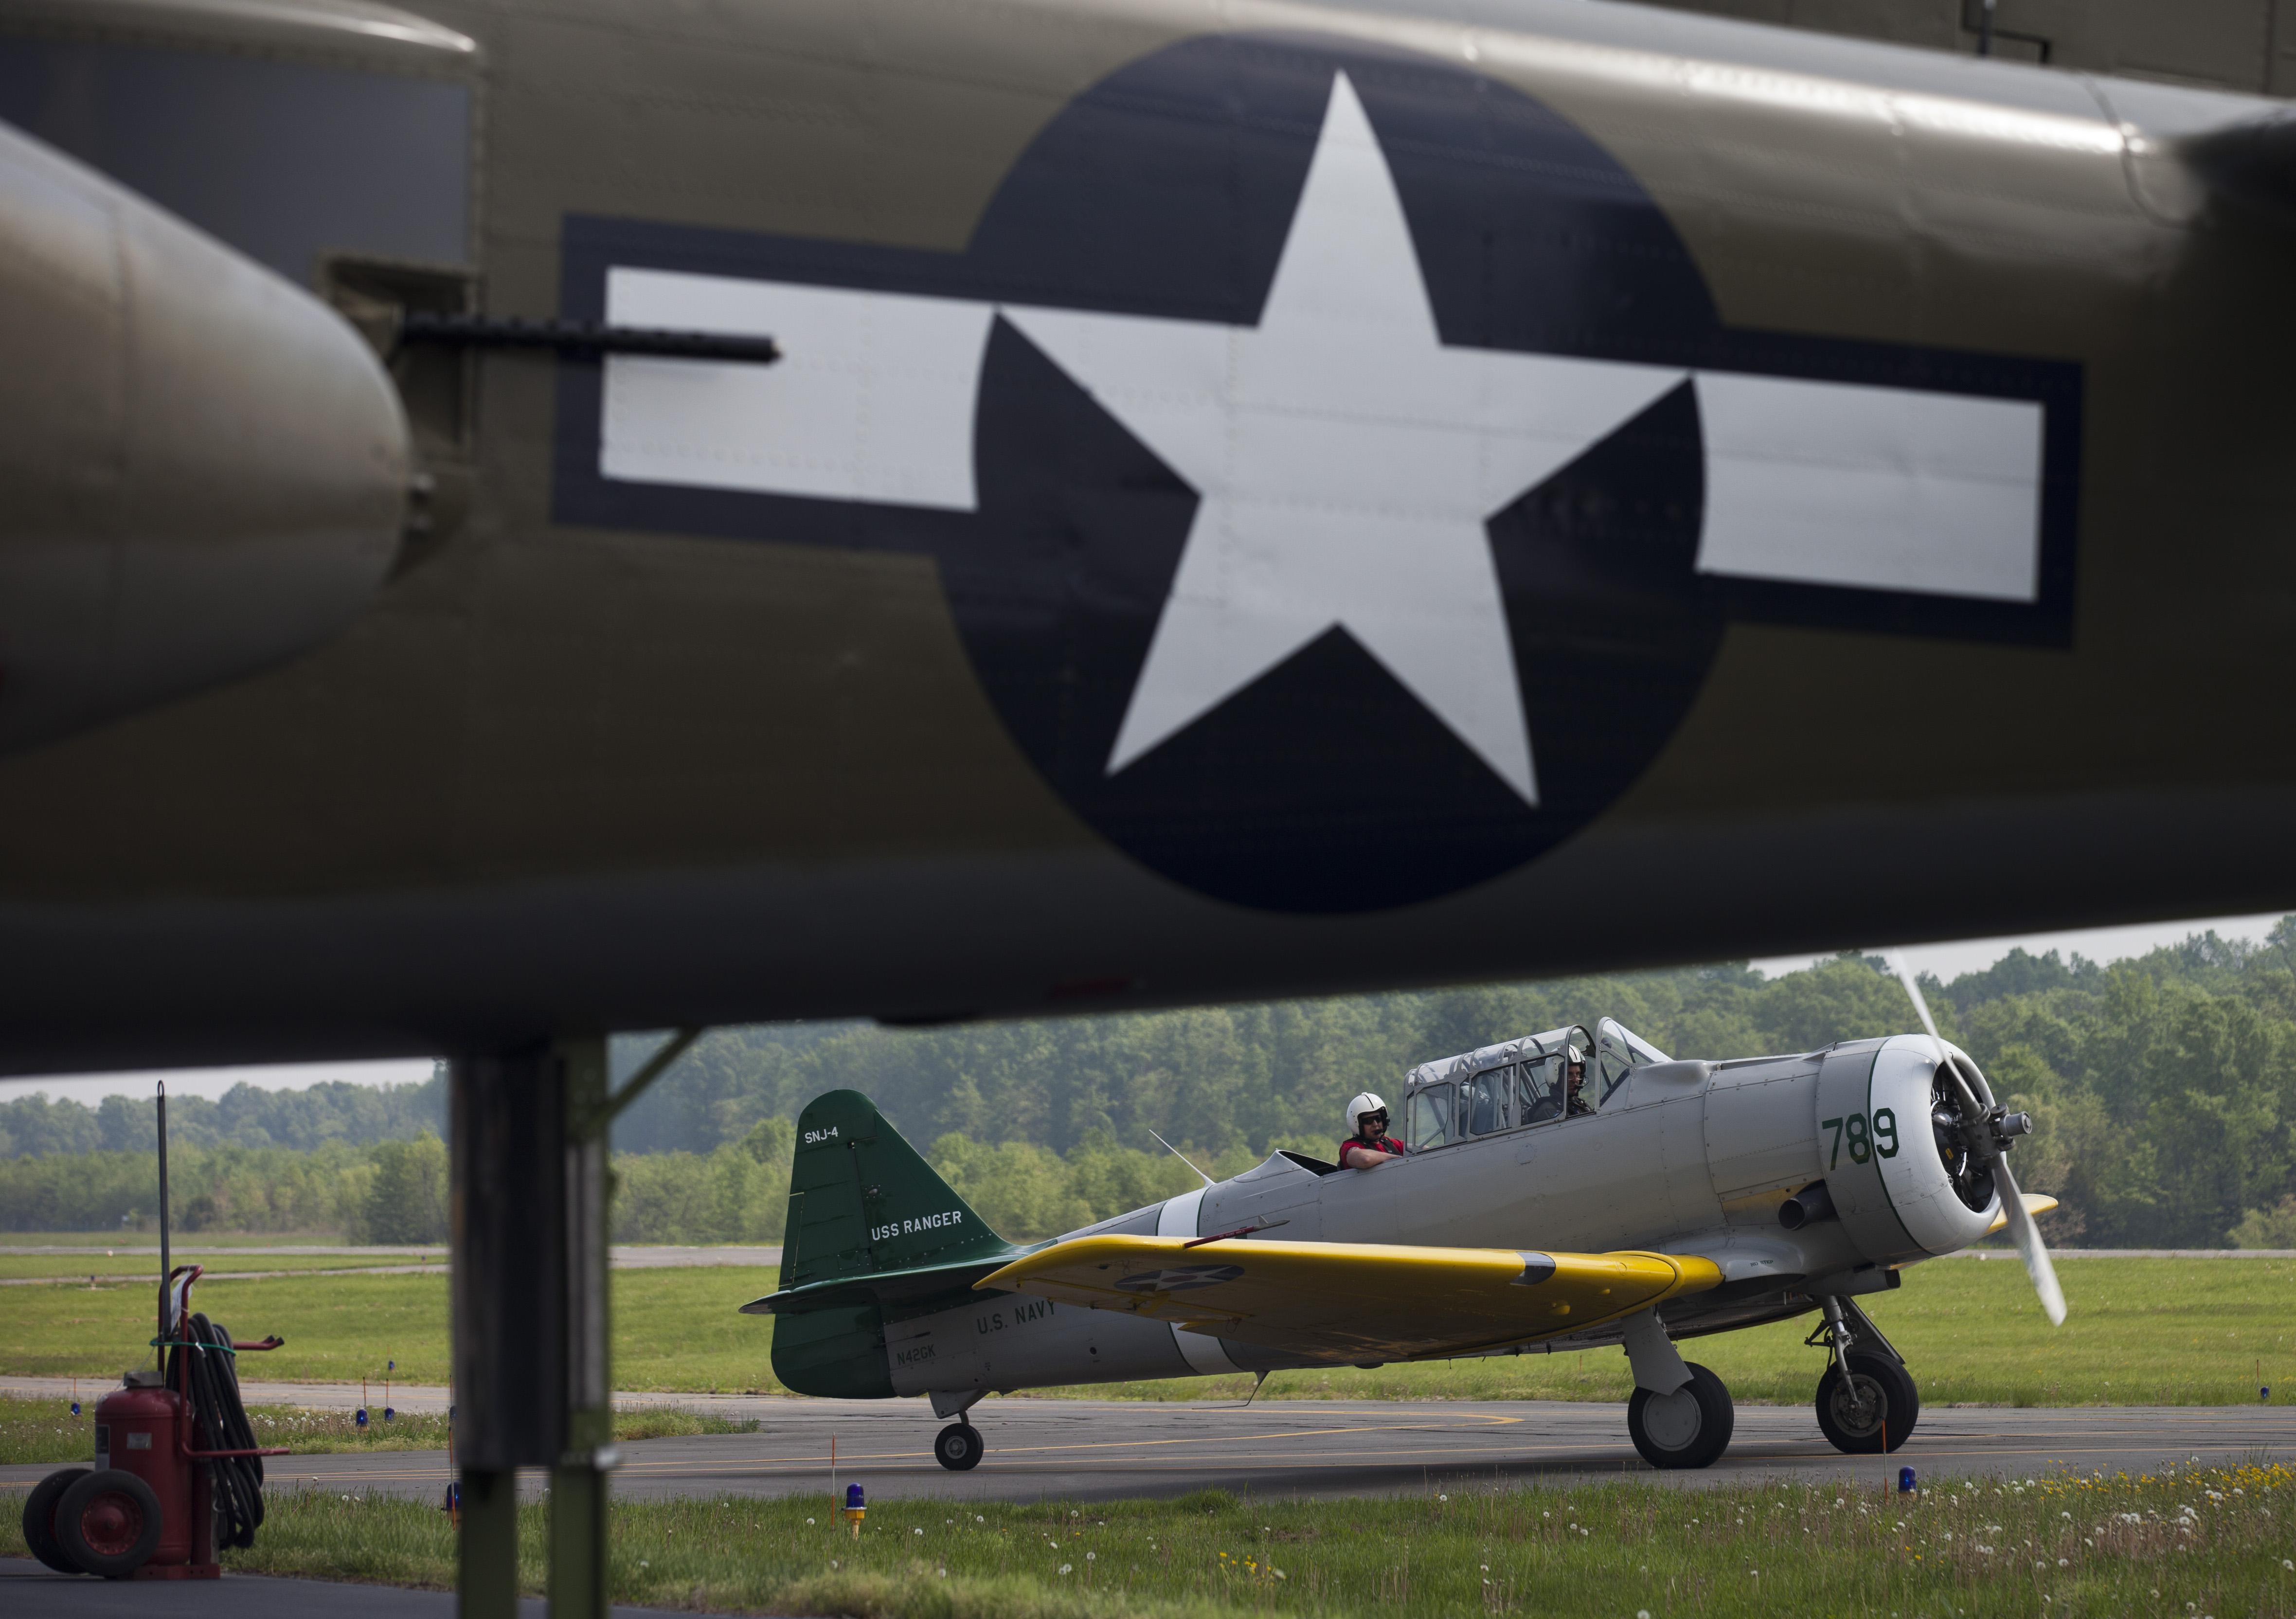  Un velivolo da addestramento Seconda guerra mondiale si prepara a decollare per un volo pratica con decine di altri velivoli presso il Culpeper Regional Airport a Brandy Station, Virginia. AFP PHOTO